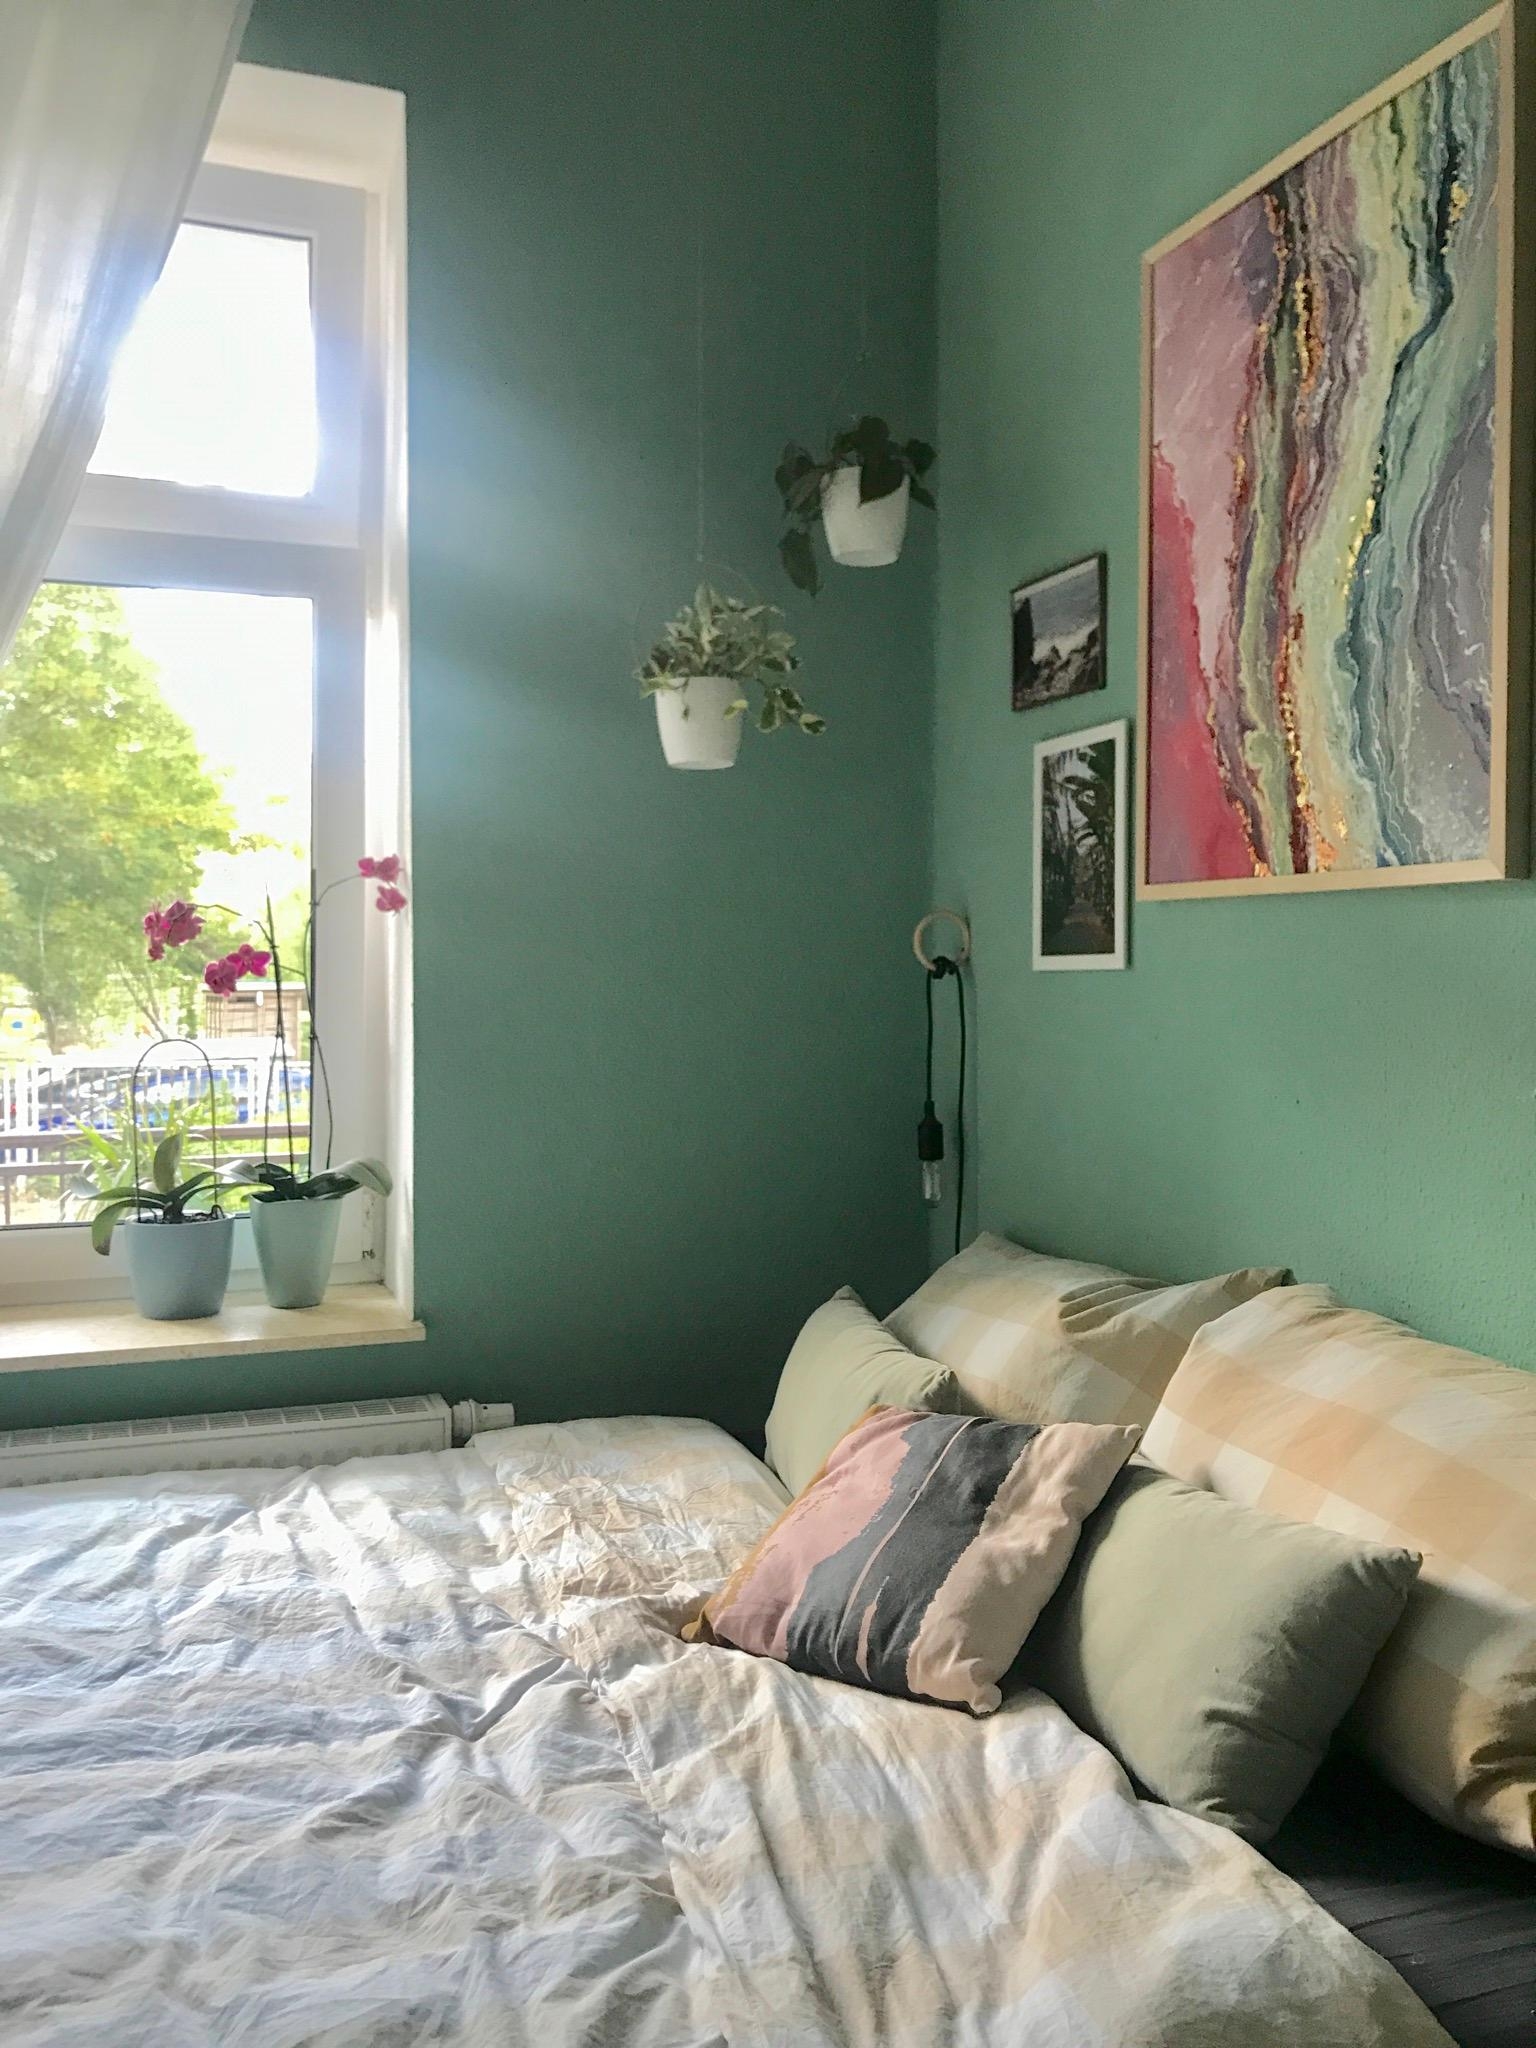 Das Grün ist noch nicht alt aber wäre ein Grau nicht schöner? 🤔 Was meint ihr? 🙈 #schlafzimmer #interior #wandfarbe